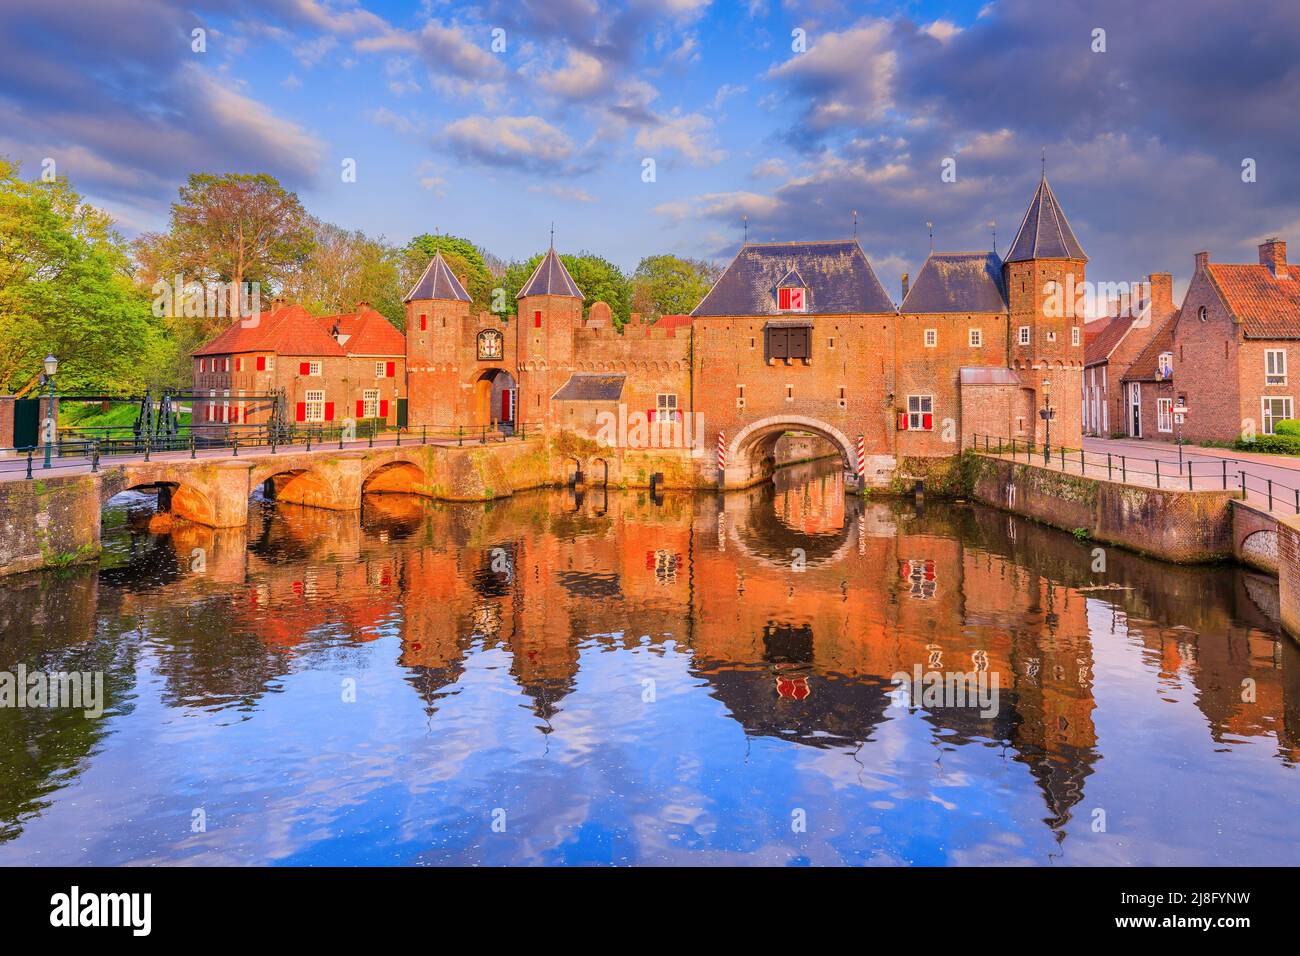 Amersfoort, Países Bajos. La puerta medieval Koppelport al atardecer. Foto de stock